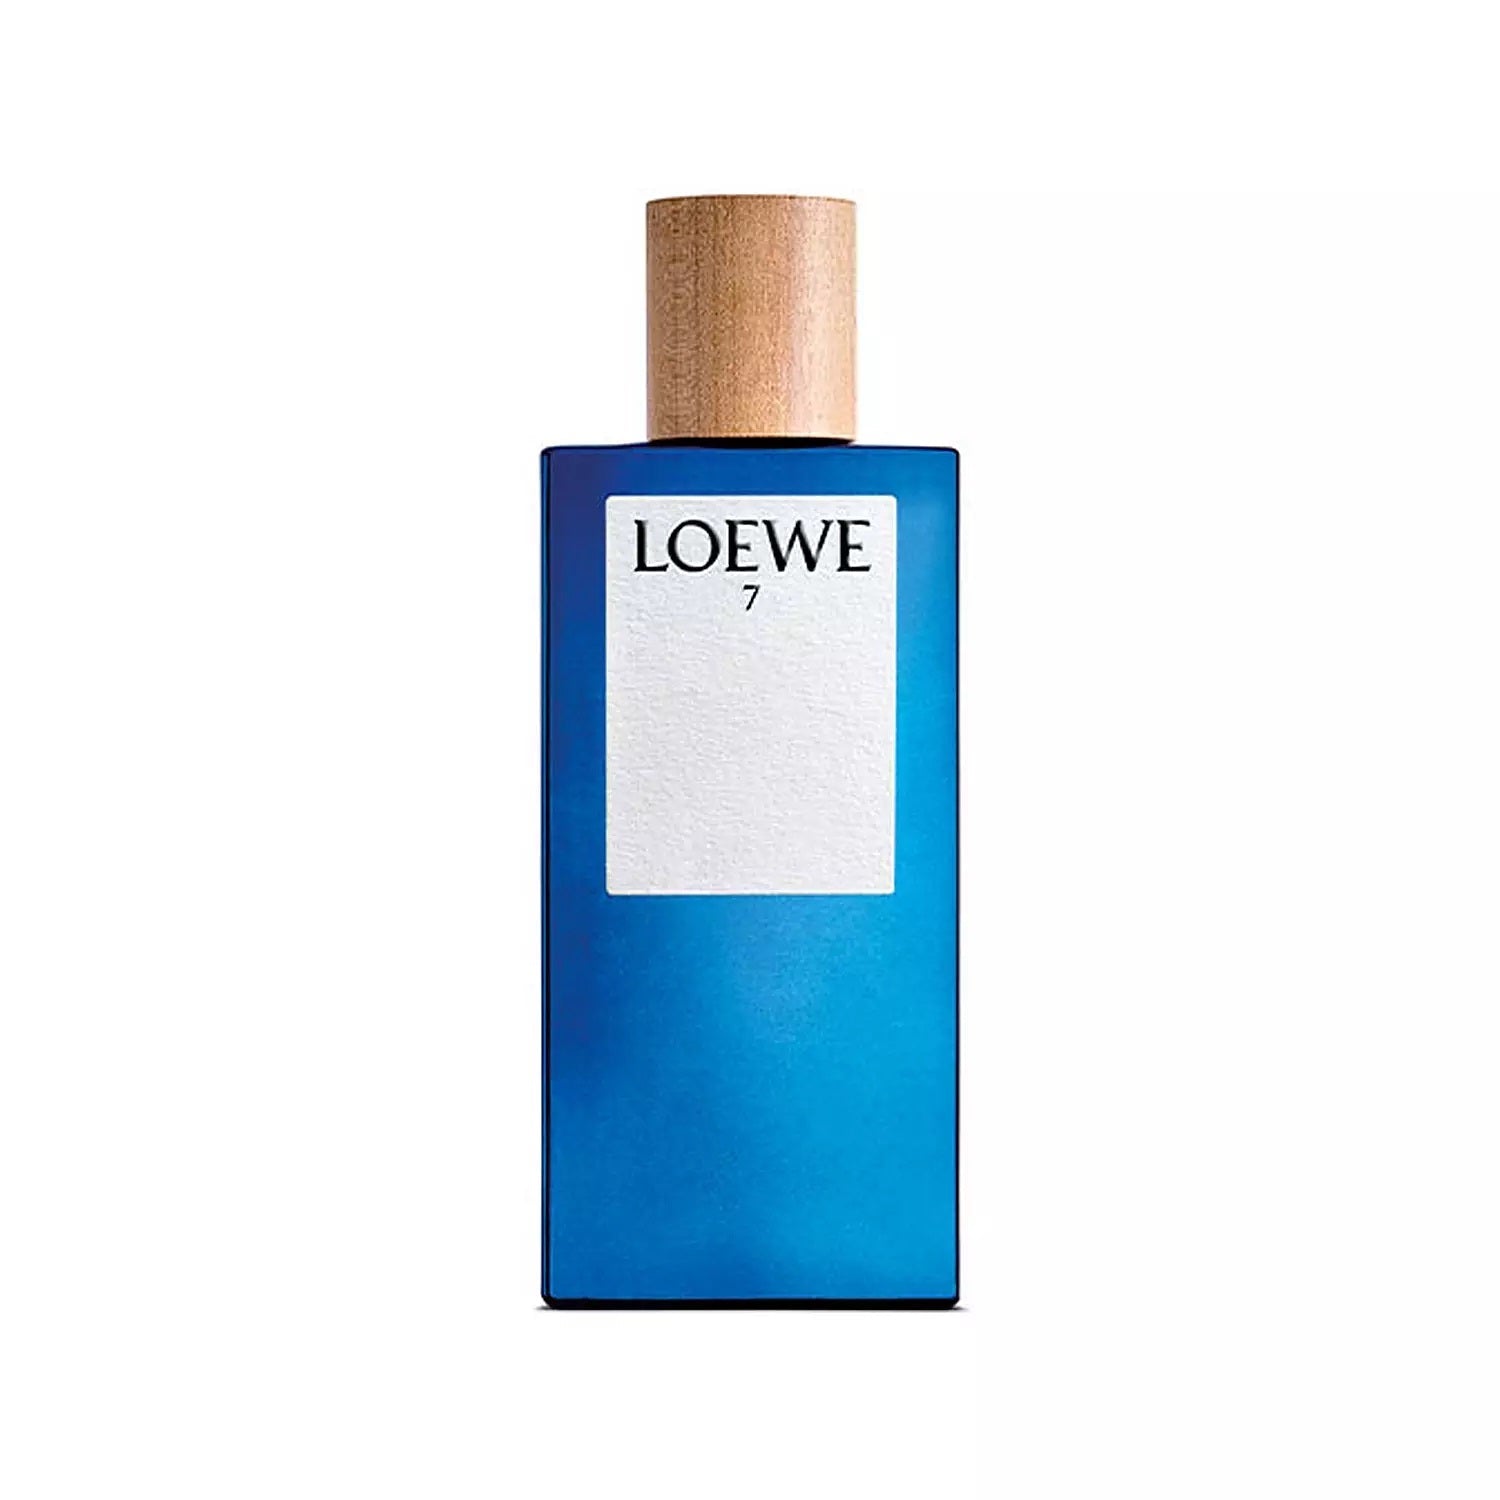 Loewe 7 Eau De Toilette Spray 100ml - LookincredibleLoewe8426017066846